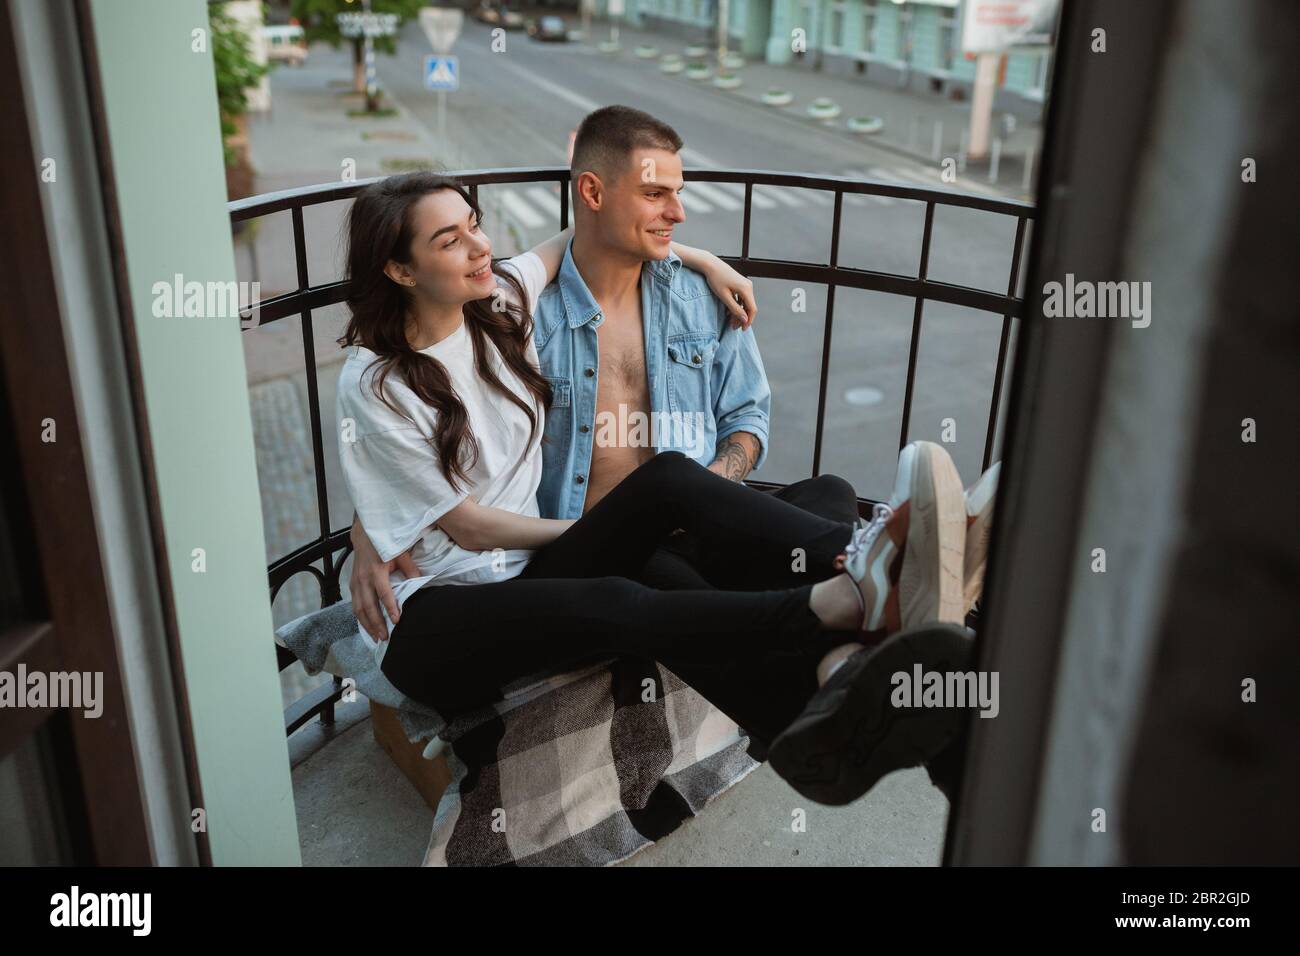 Auf dem Balkon sitzend, lachend. Quarantäne sperren, bleiben zu Hause Konzept - junge schöne kaukasische Paar genießen neuen Lebensstil während Coronavirus. Glück, Zusammengehörigkeit, Gesundheit. Stockfoto